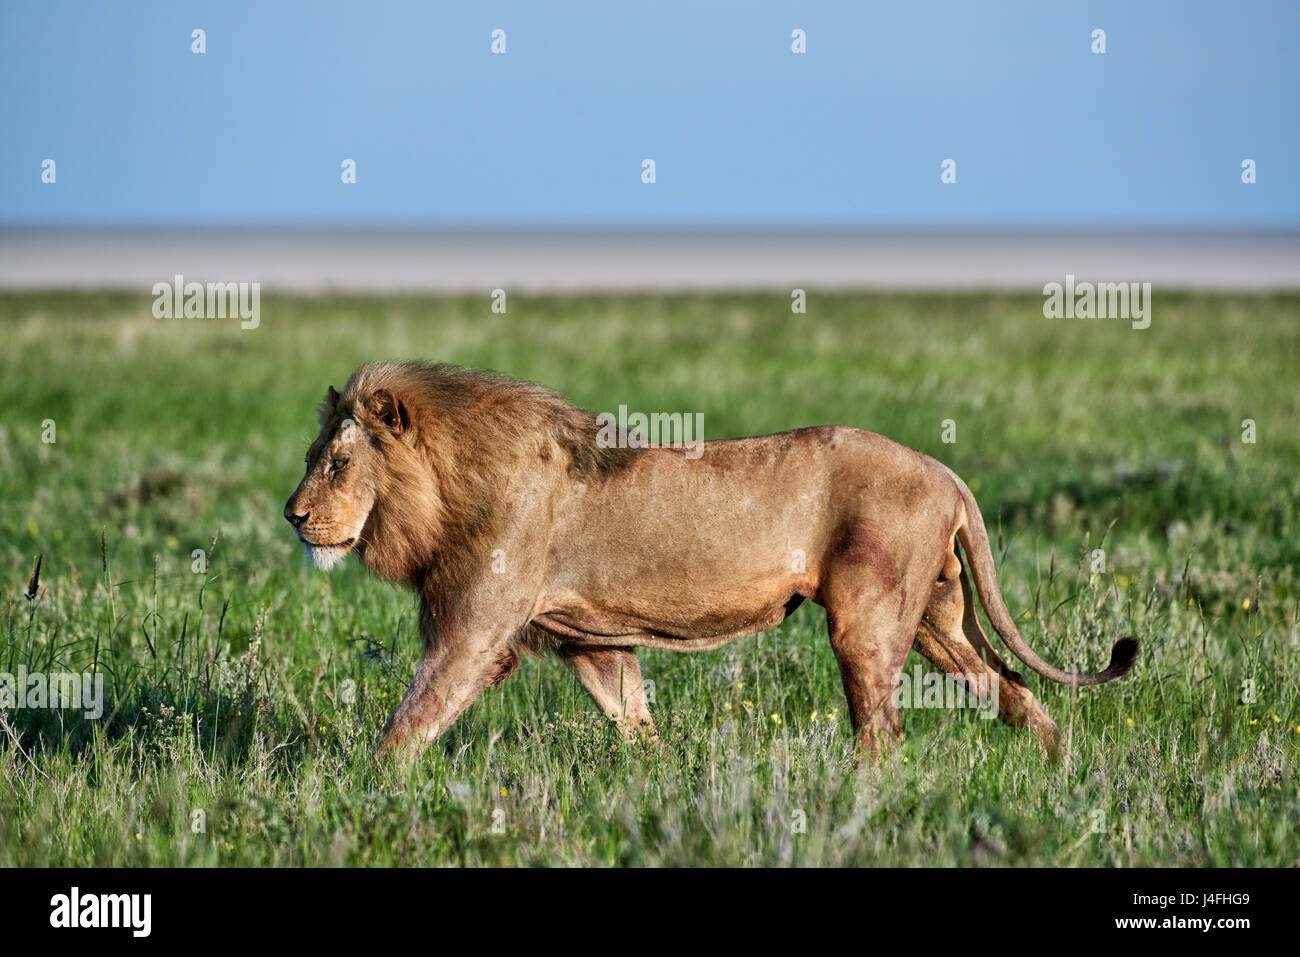 Leone maschio (panthera leo) attraverso il pattugliamento della zona Foto Stock